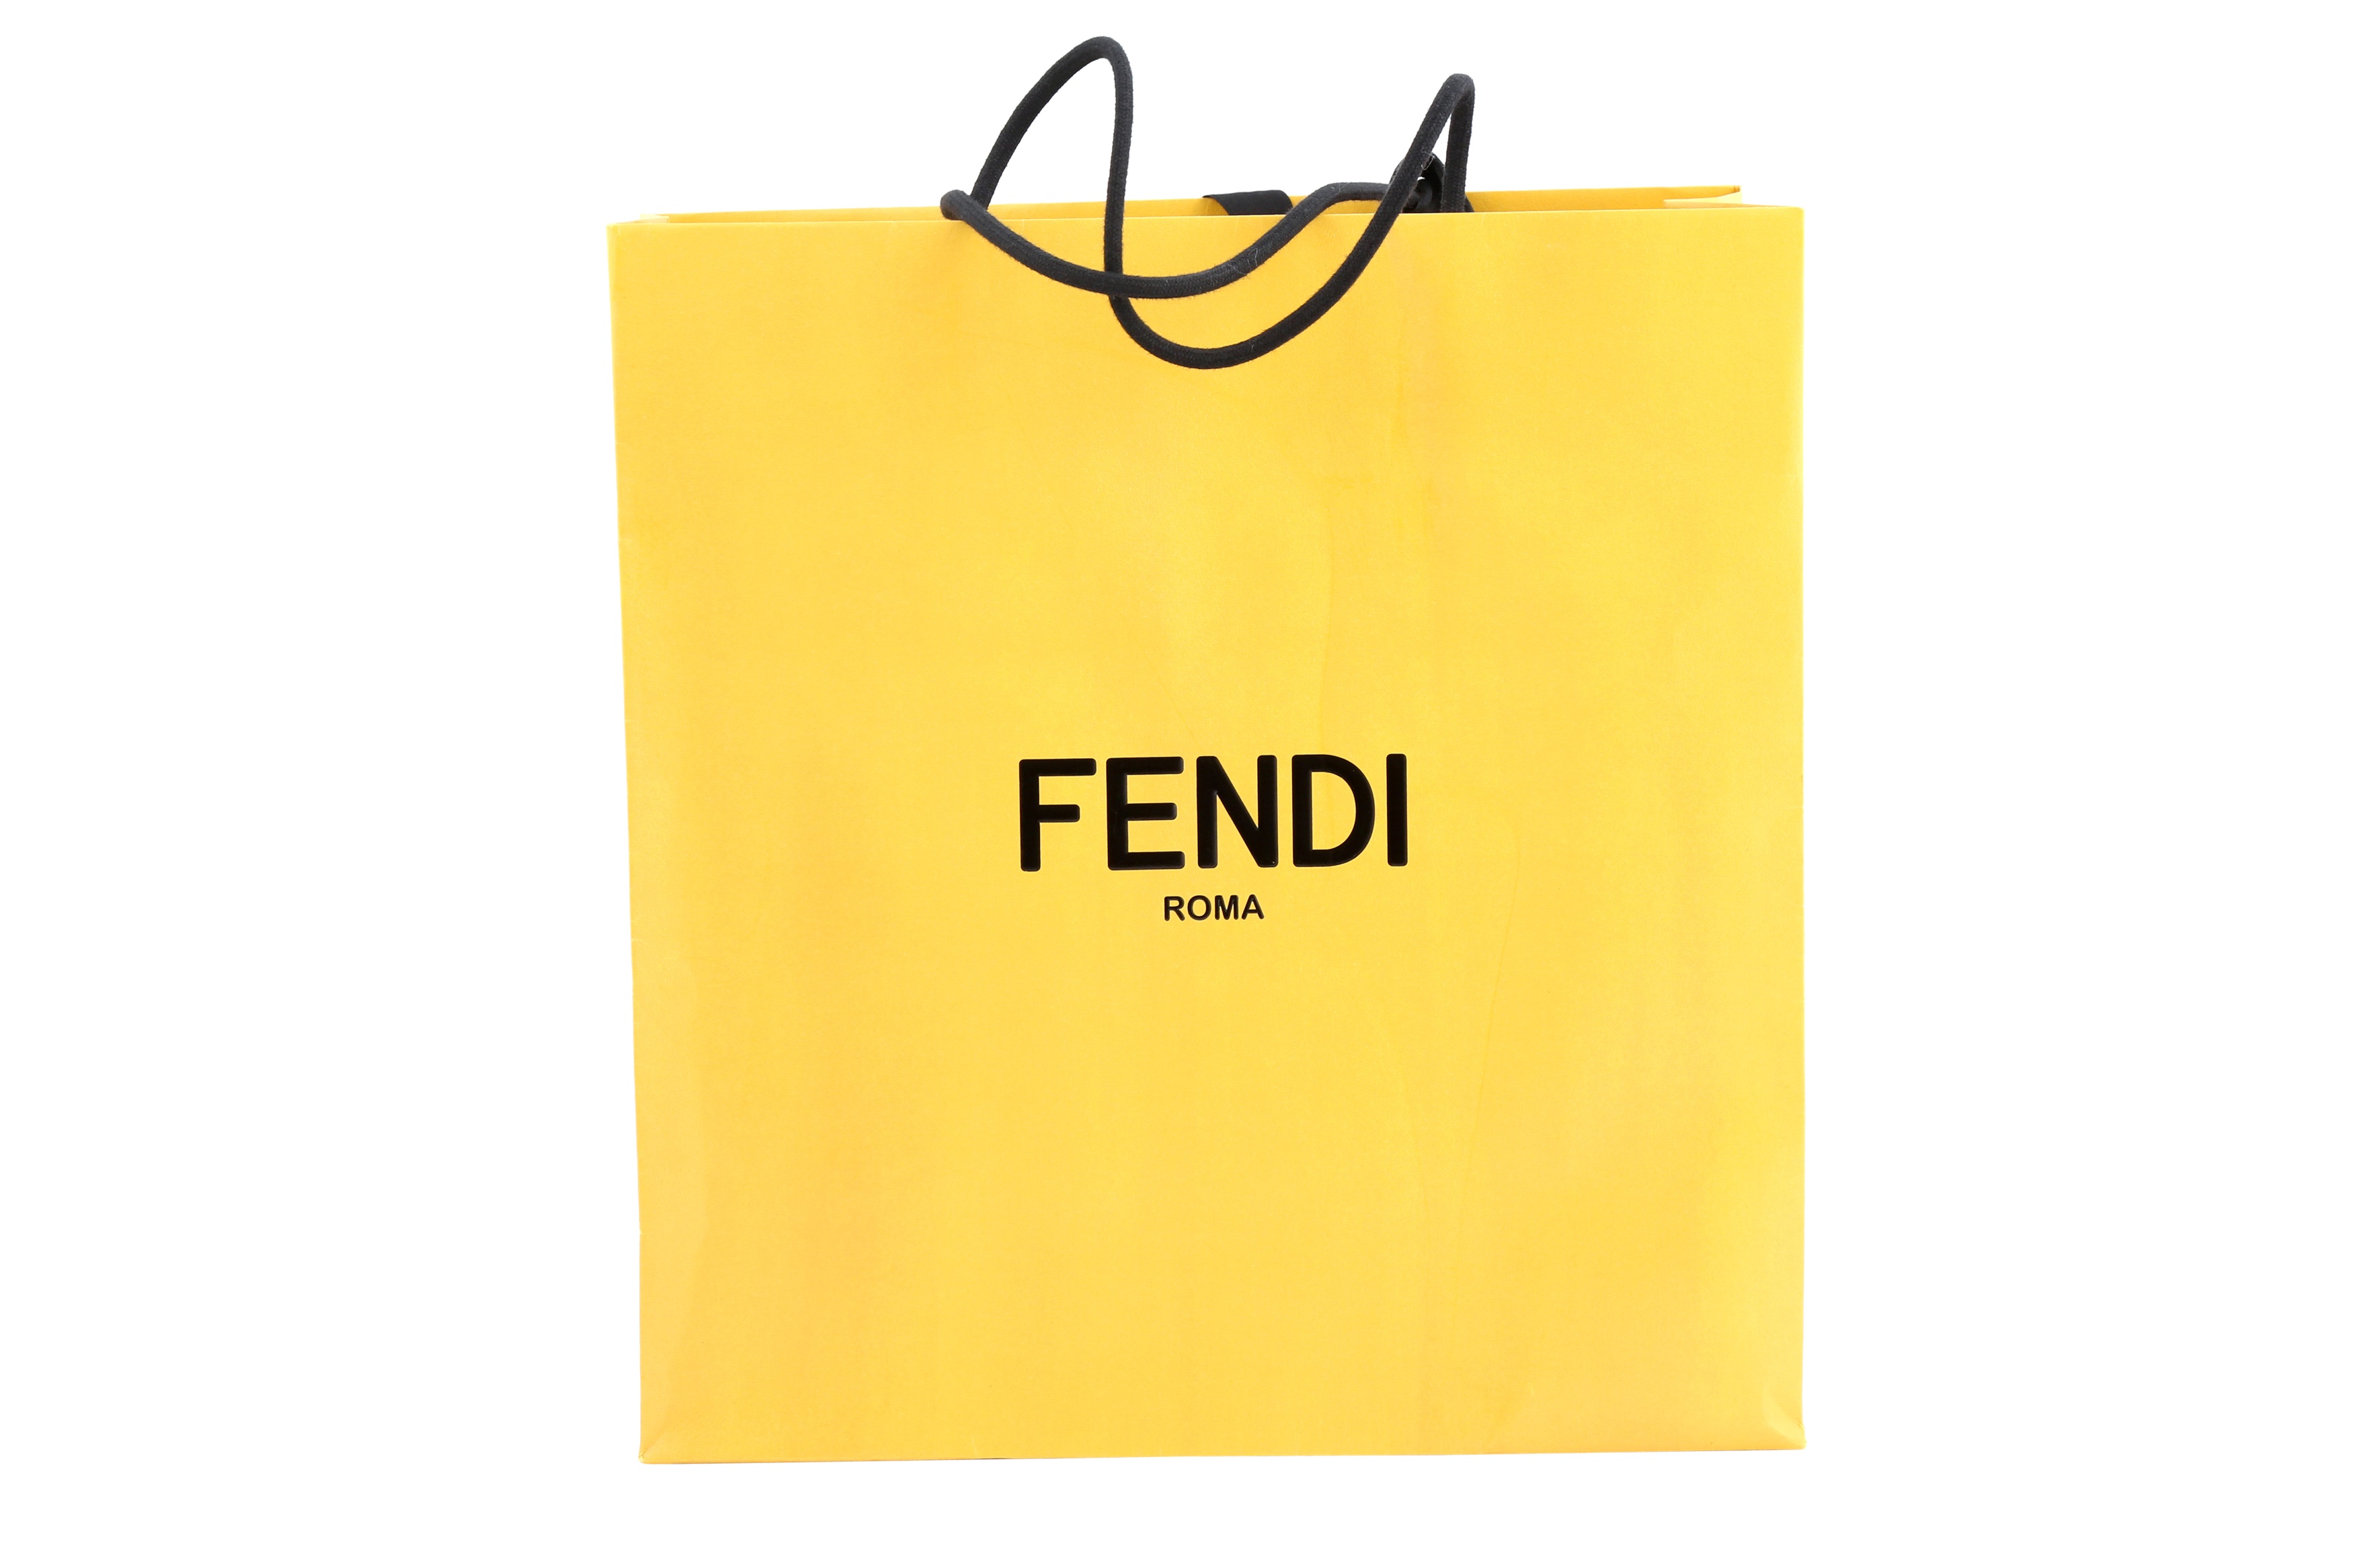 Sold at Auction: Fendi Silver PVC Transparent Sequin Mini Baguette Bag